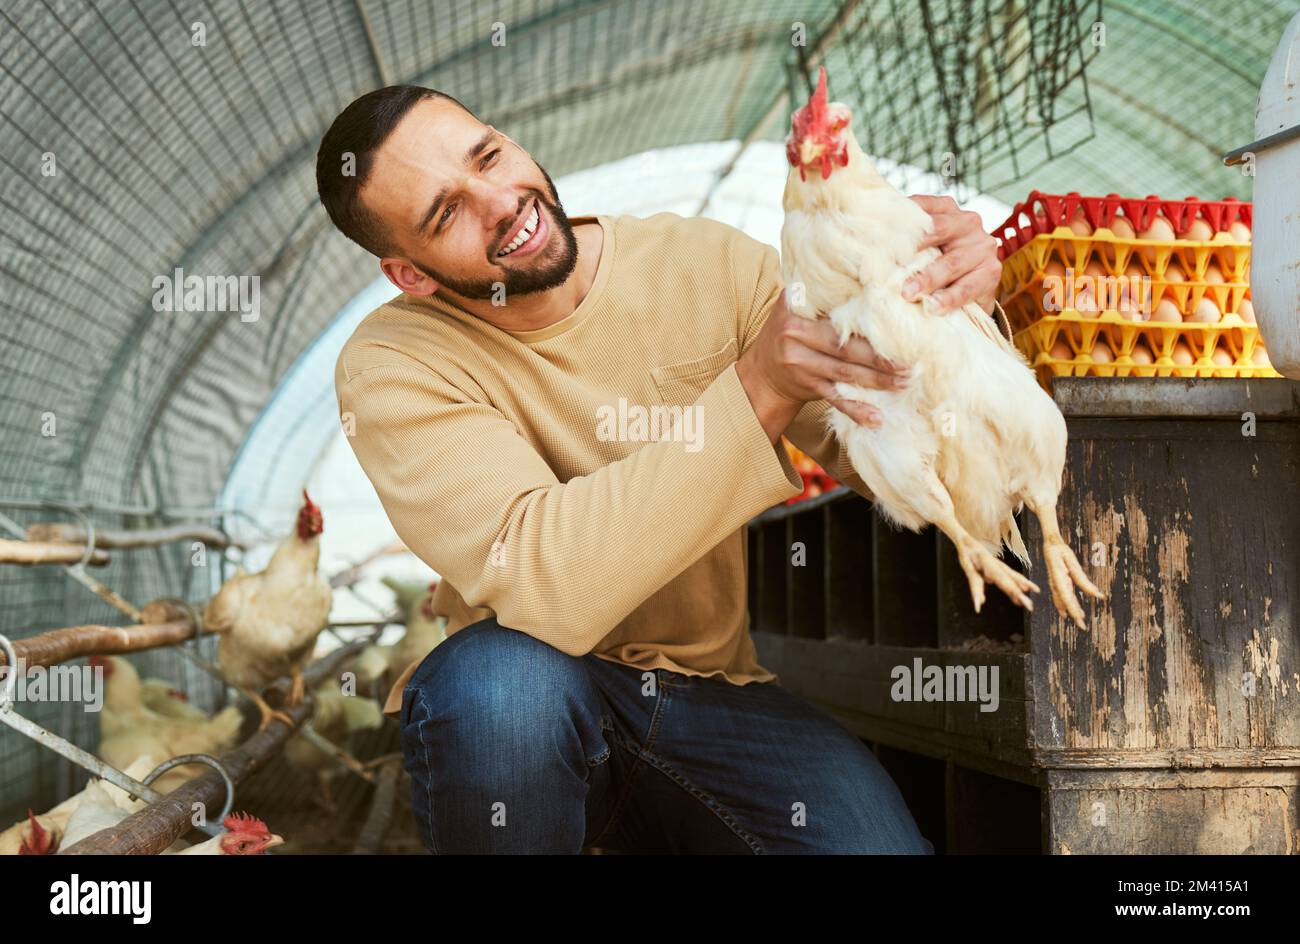 Hühnerzüchter, Tiere und Landwirtschaft mit einem Mann, der einen Hahn hält, um die Versorgung mit Geflügel auf dem Land zu pflegen, zu Gesundheit und Wohlbefinden zu bringen. Ein glücklicher Mann Stockfoto